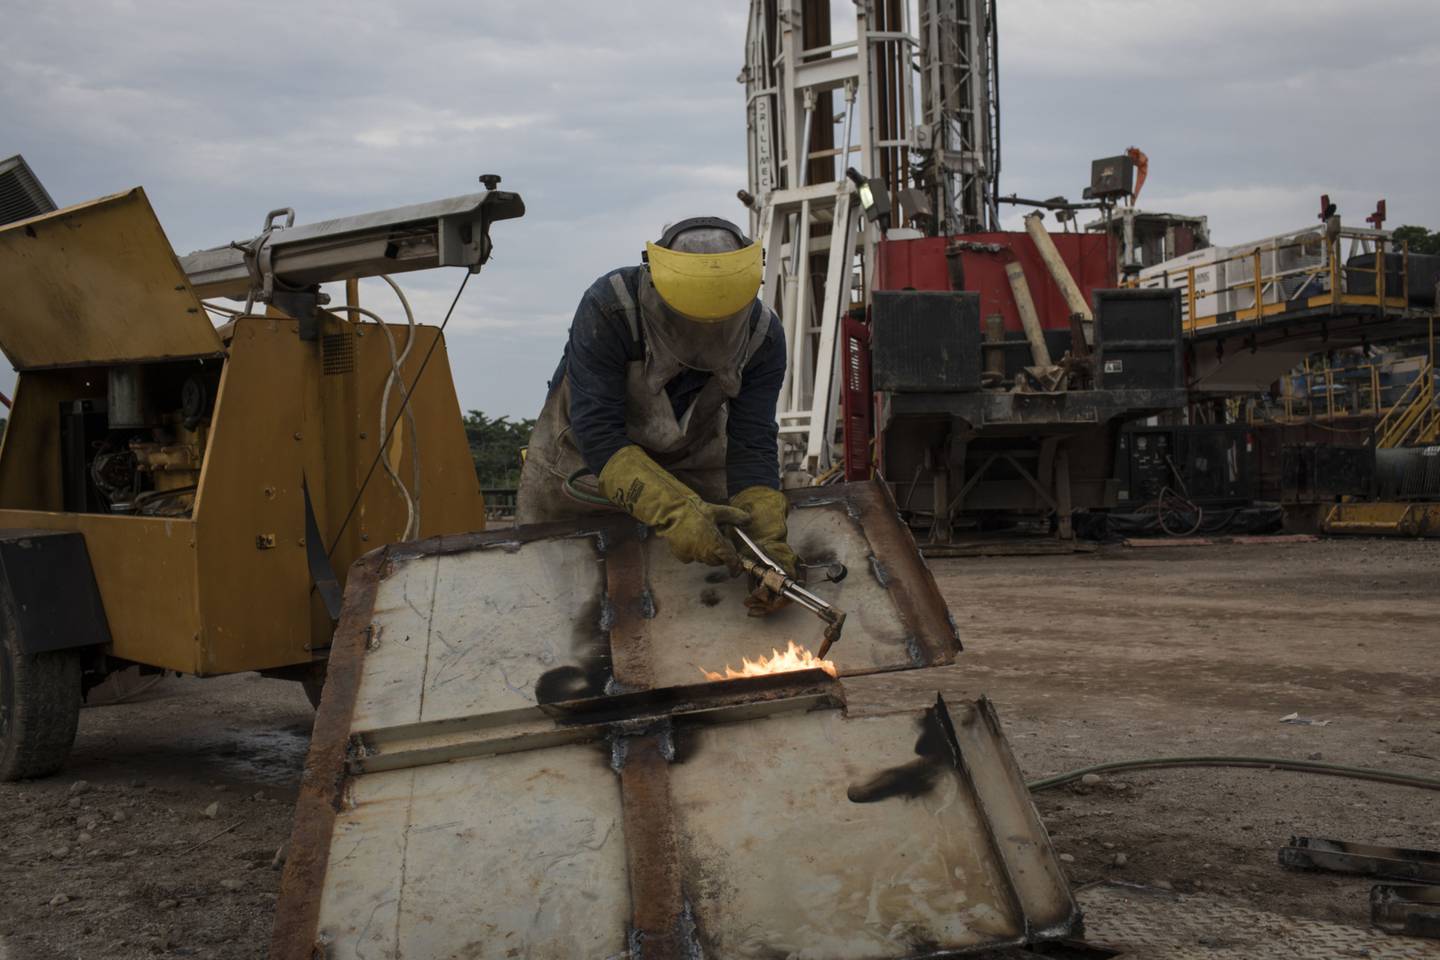 Un empleado opera una antorcha durante las operaciones de mantenimiento en un sitio de extracción cerca de la refinería de Ecopetrol SA en Barrancabermeja, Santander, Colombia, el viernes 20 de abril de 2018.dfd